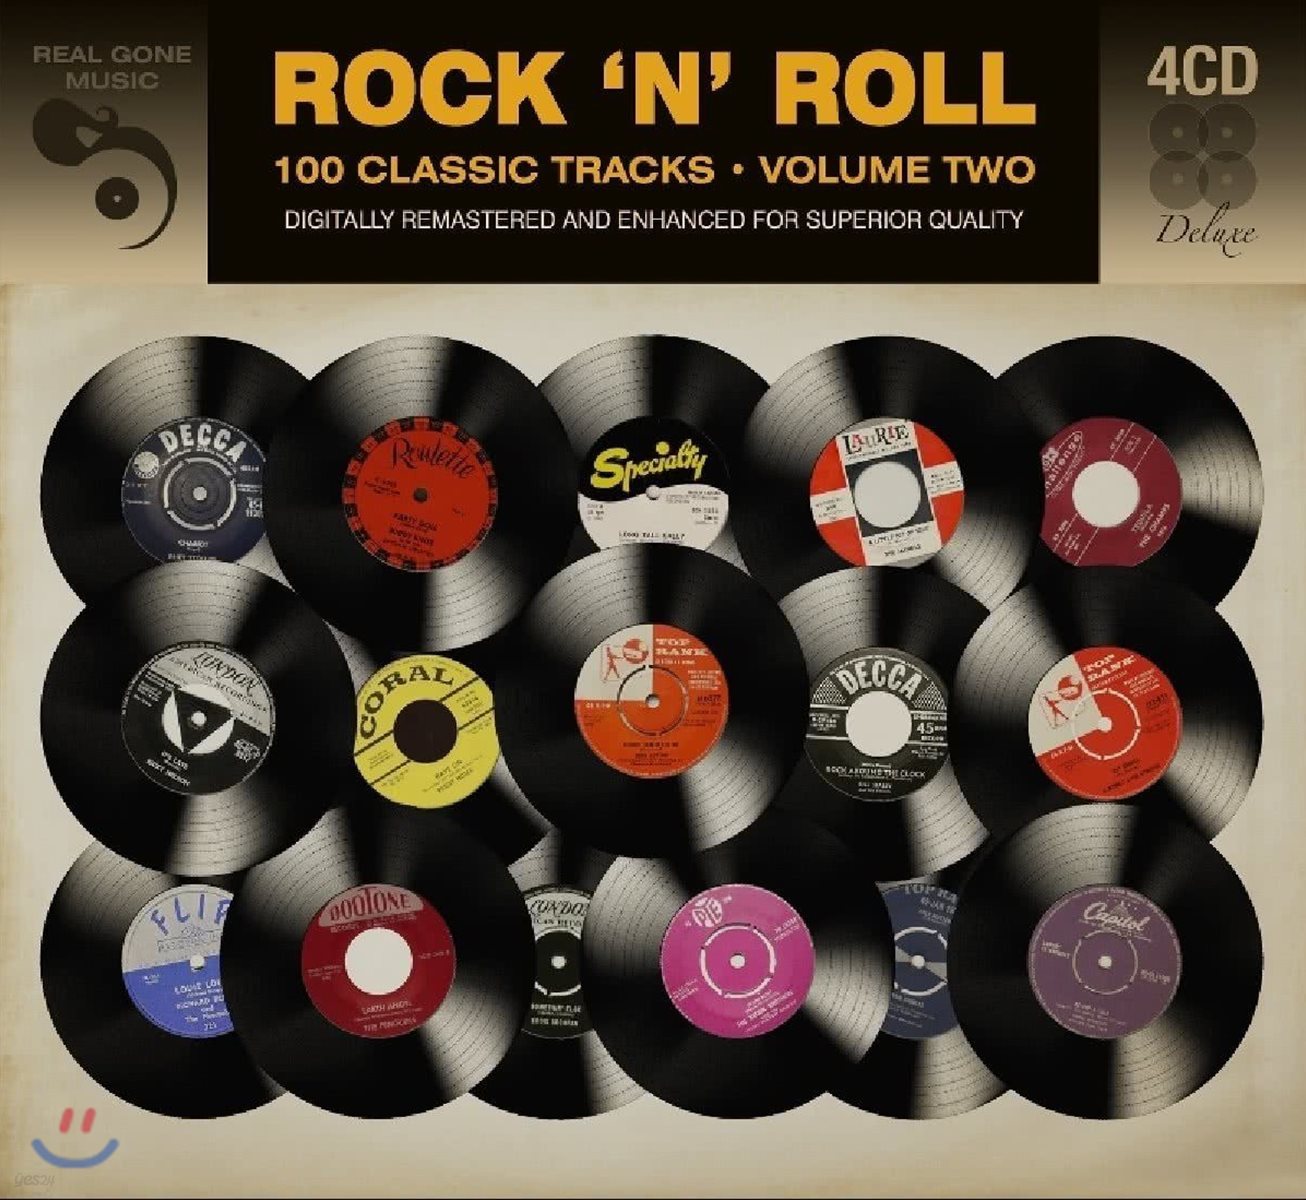 록큰롤 명곡 모음집 (Rock &#39;N&#39; Roll Vol. Two)